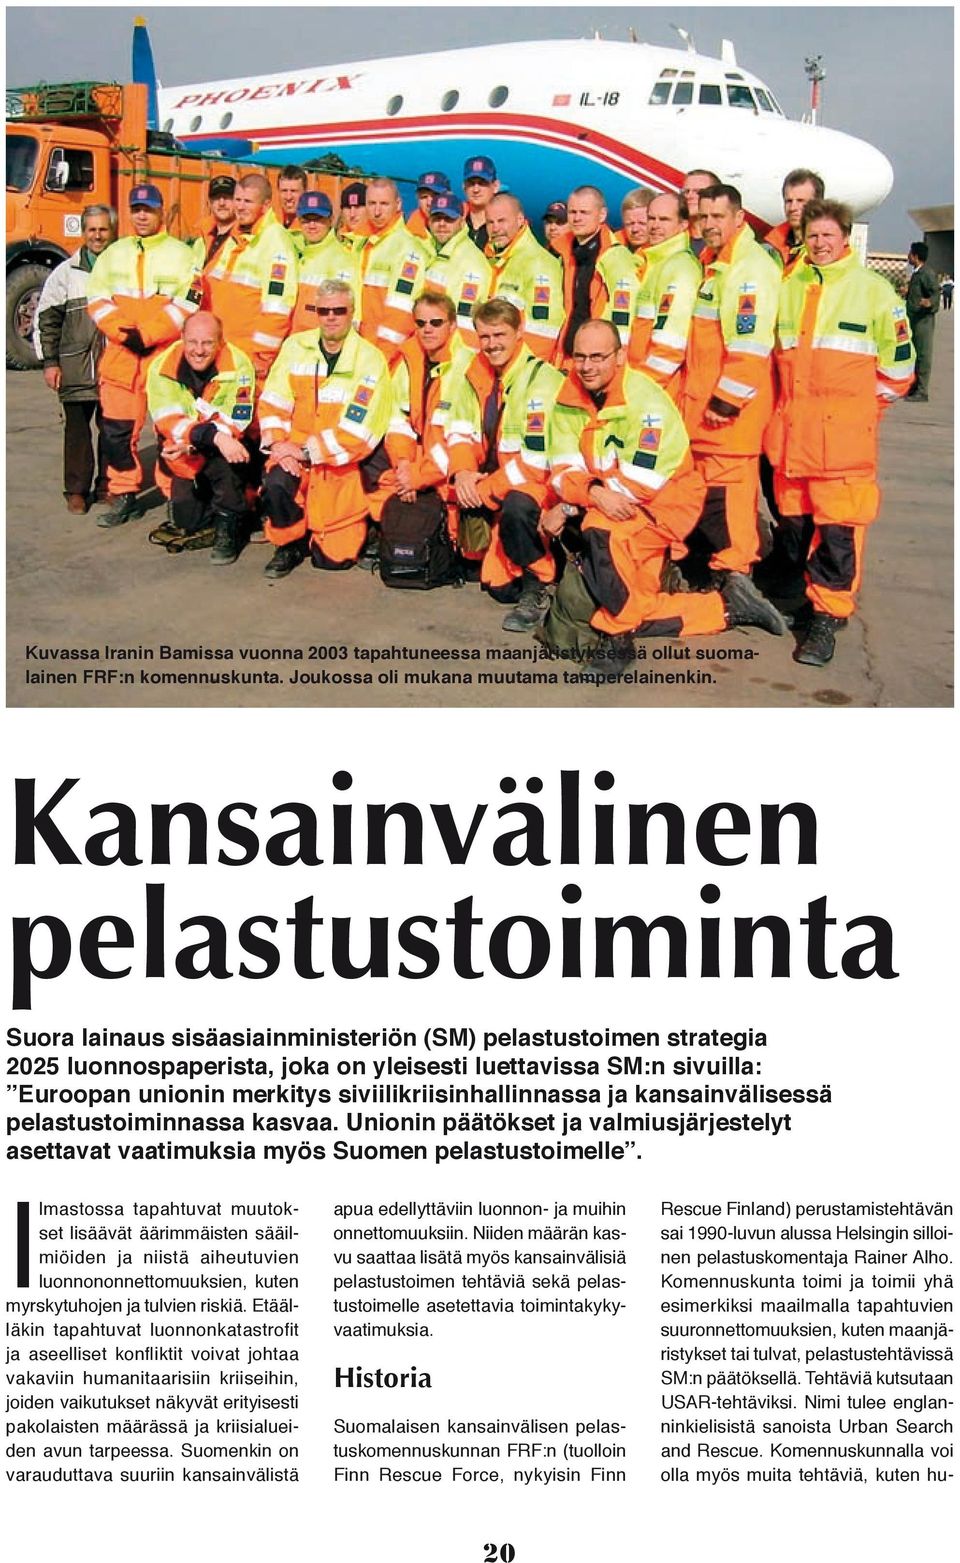 siviilikriisinhallinnassa ja kansainvälisessä pelastustoiminnassa kasvaa. Unionin päätökset ja valmiusjärjestelyt asettavat vaatimuksia myös Suomen pelastustoimelle.